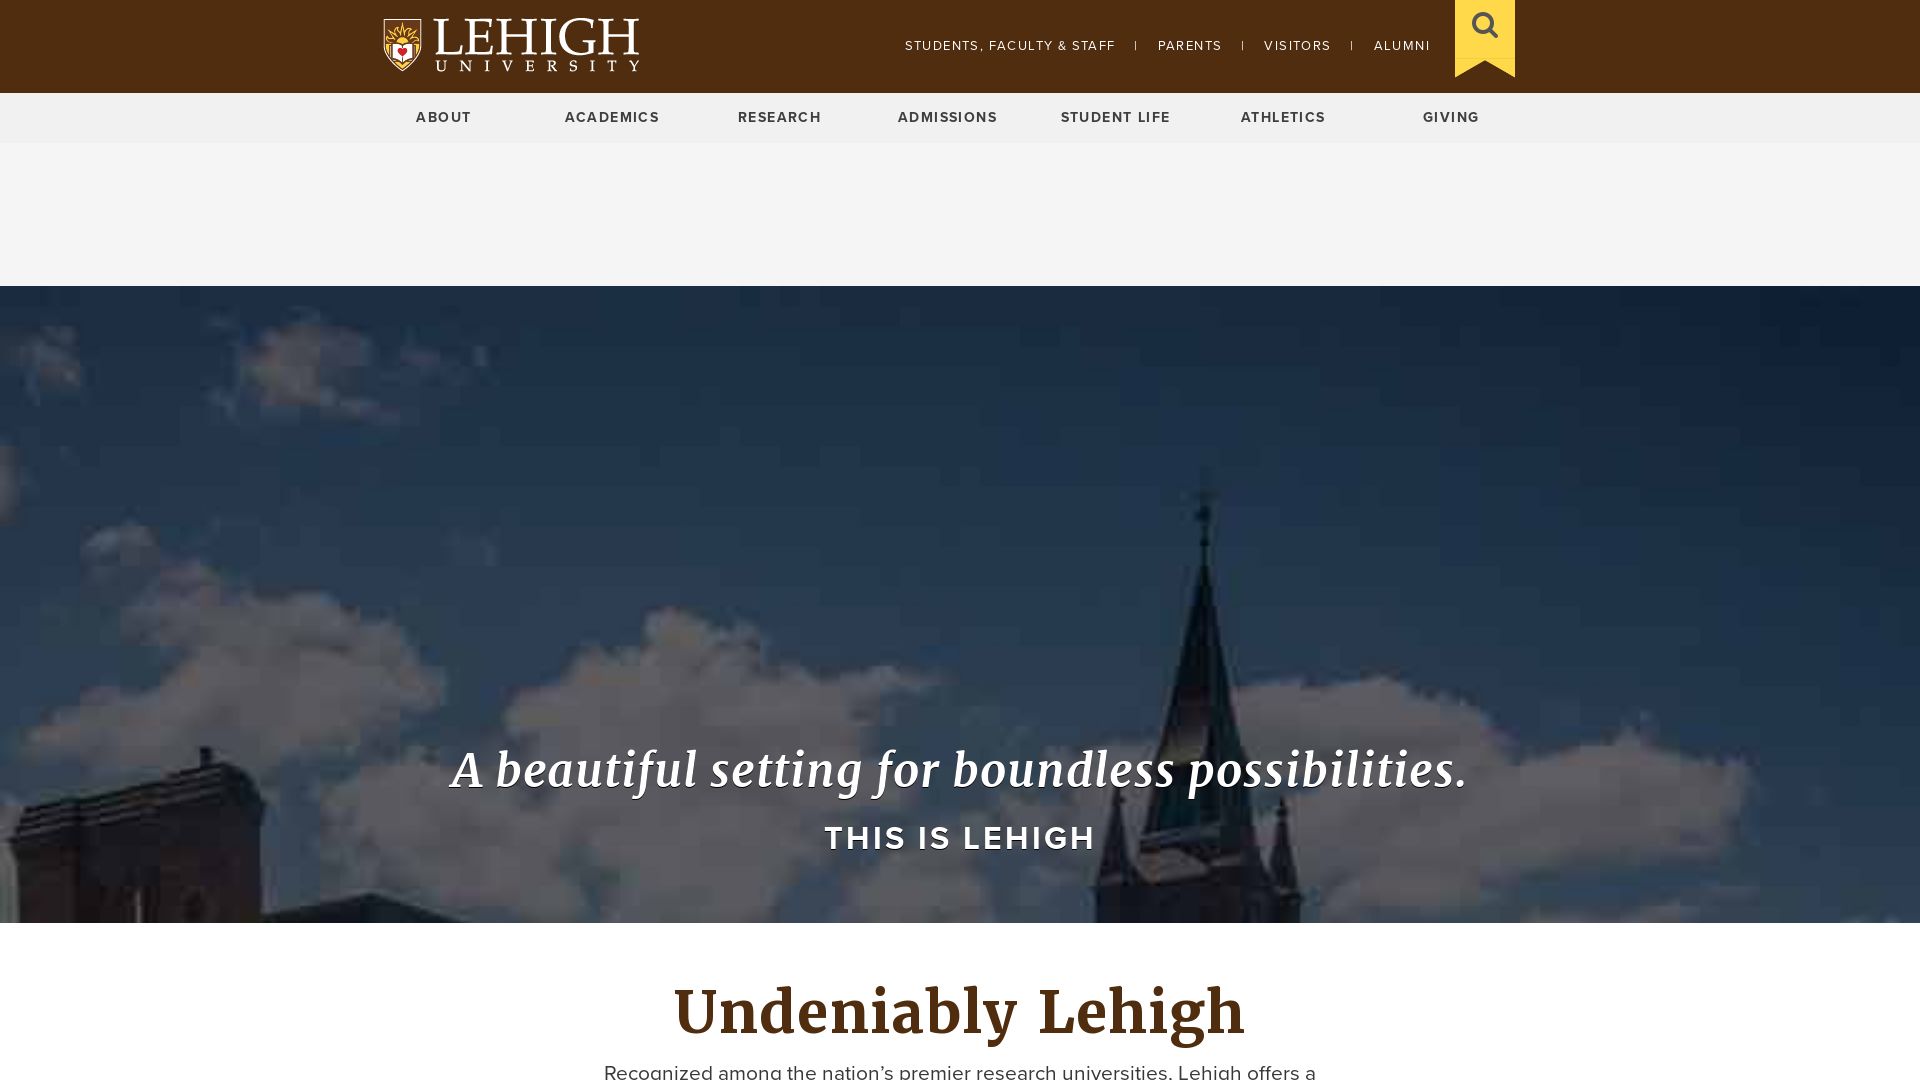 État du site web lehigh.edu est   EN LIGNE